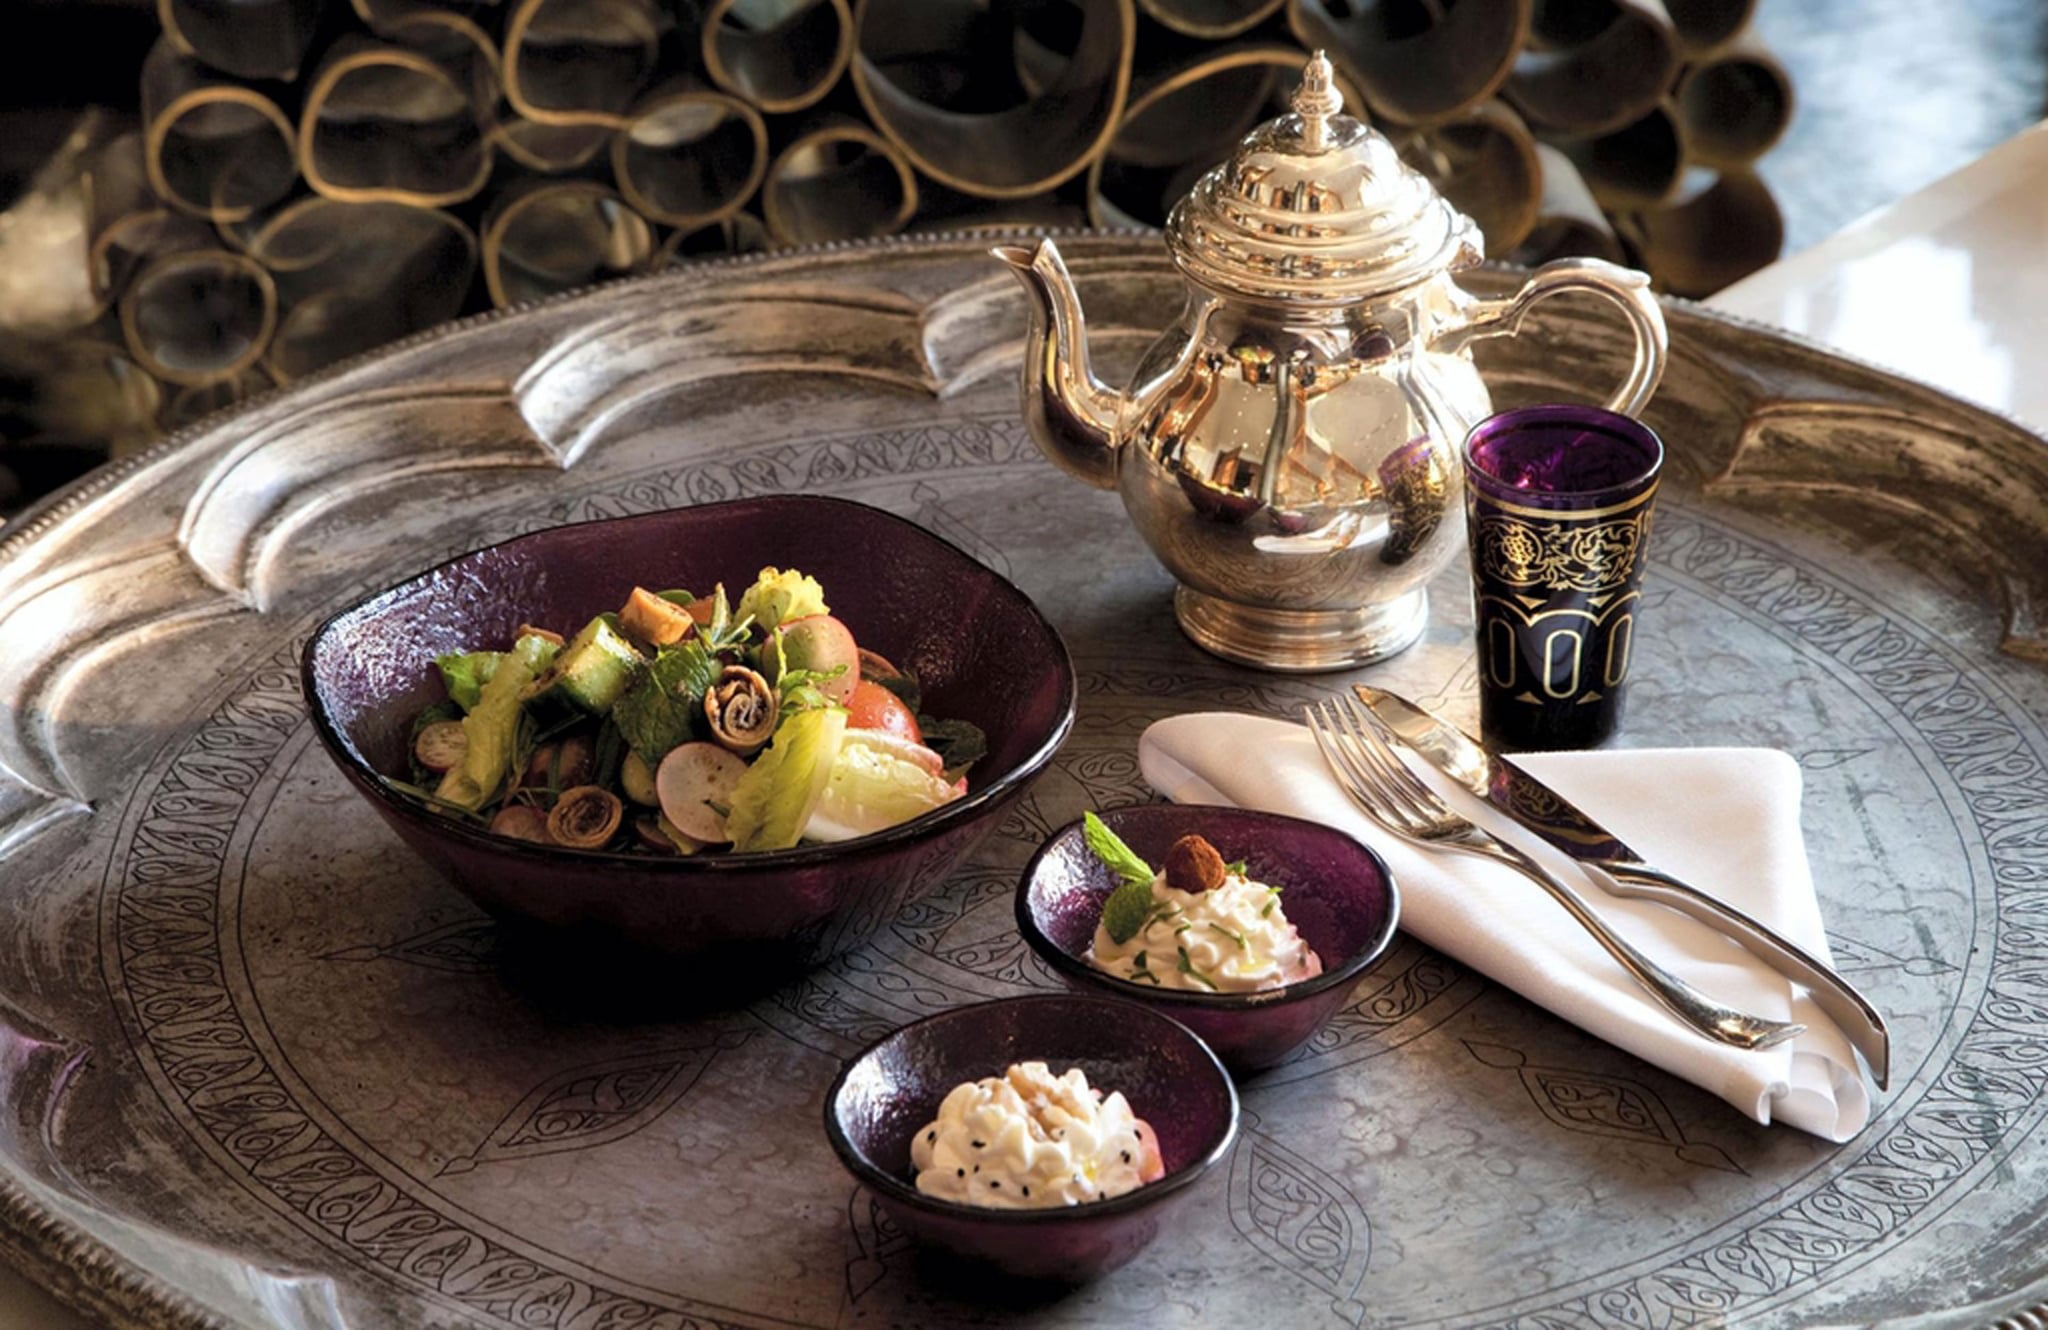 خدمات توصيل وجبات الإفطار في رمضان 2020 في الإمارات العربية المتحدة Popsugar Middle East Food